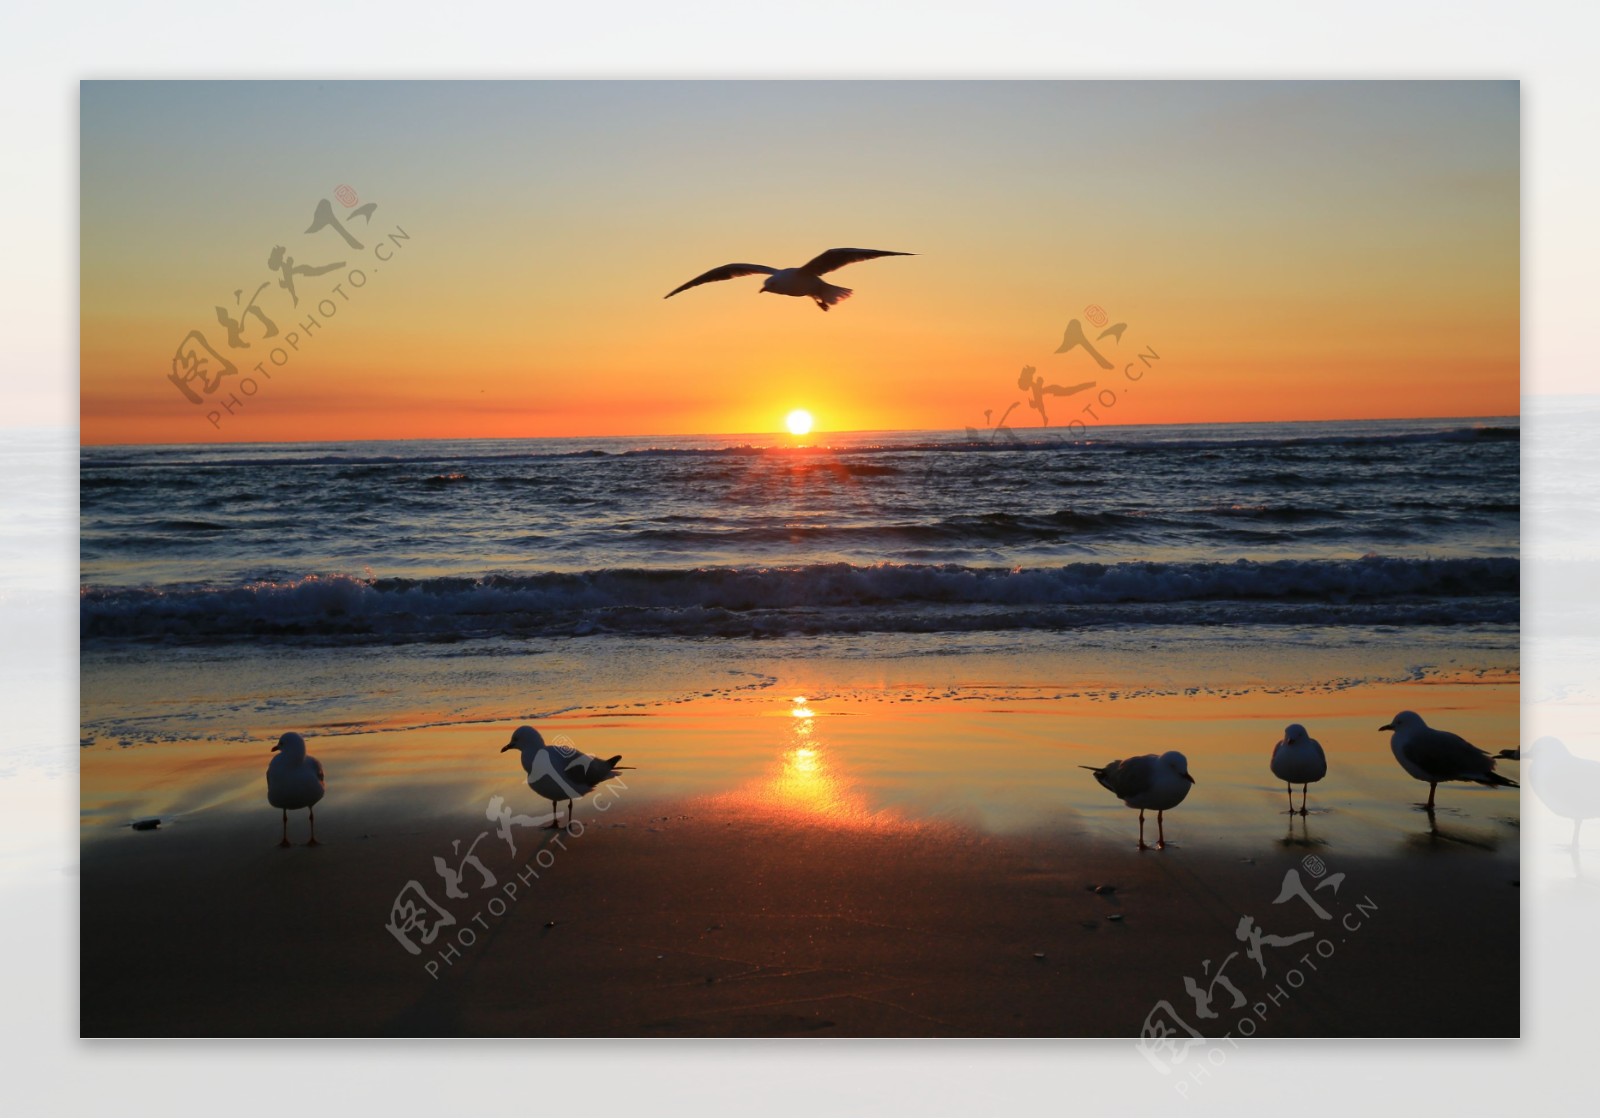 黄金海岸晨曦中的海鸥